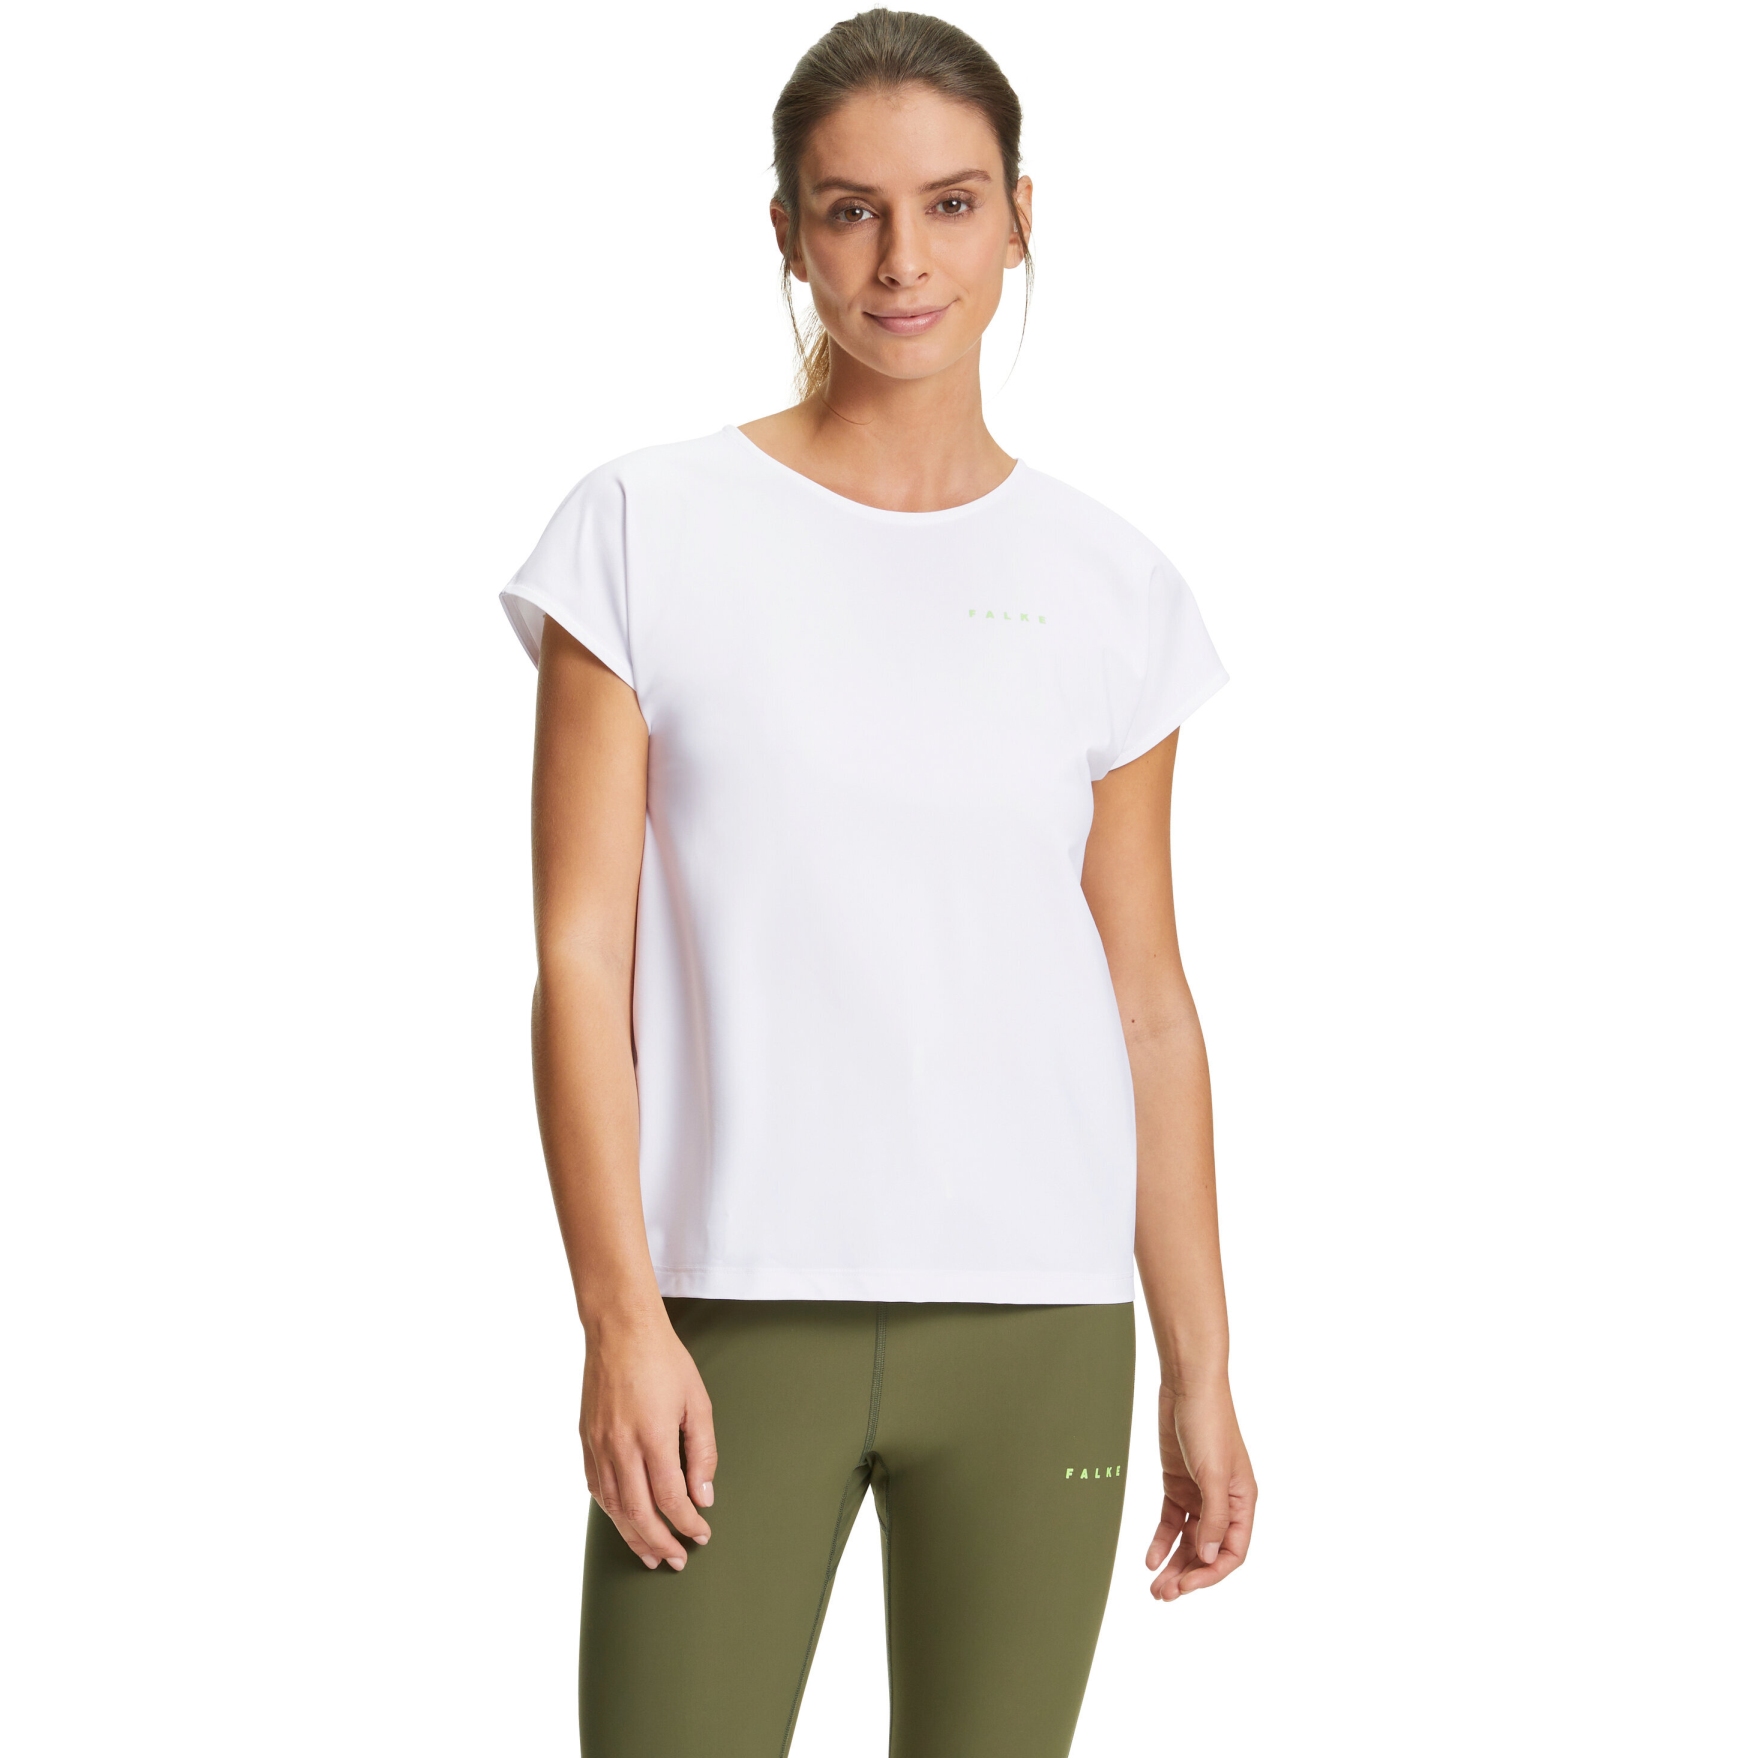 Produktbild von Falke RU T-Shirt 1 Damen - weiß 2860